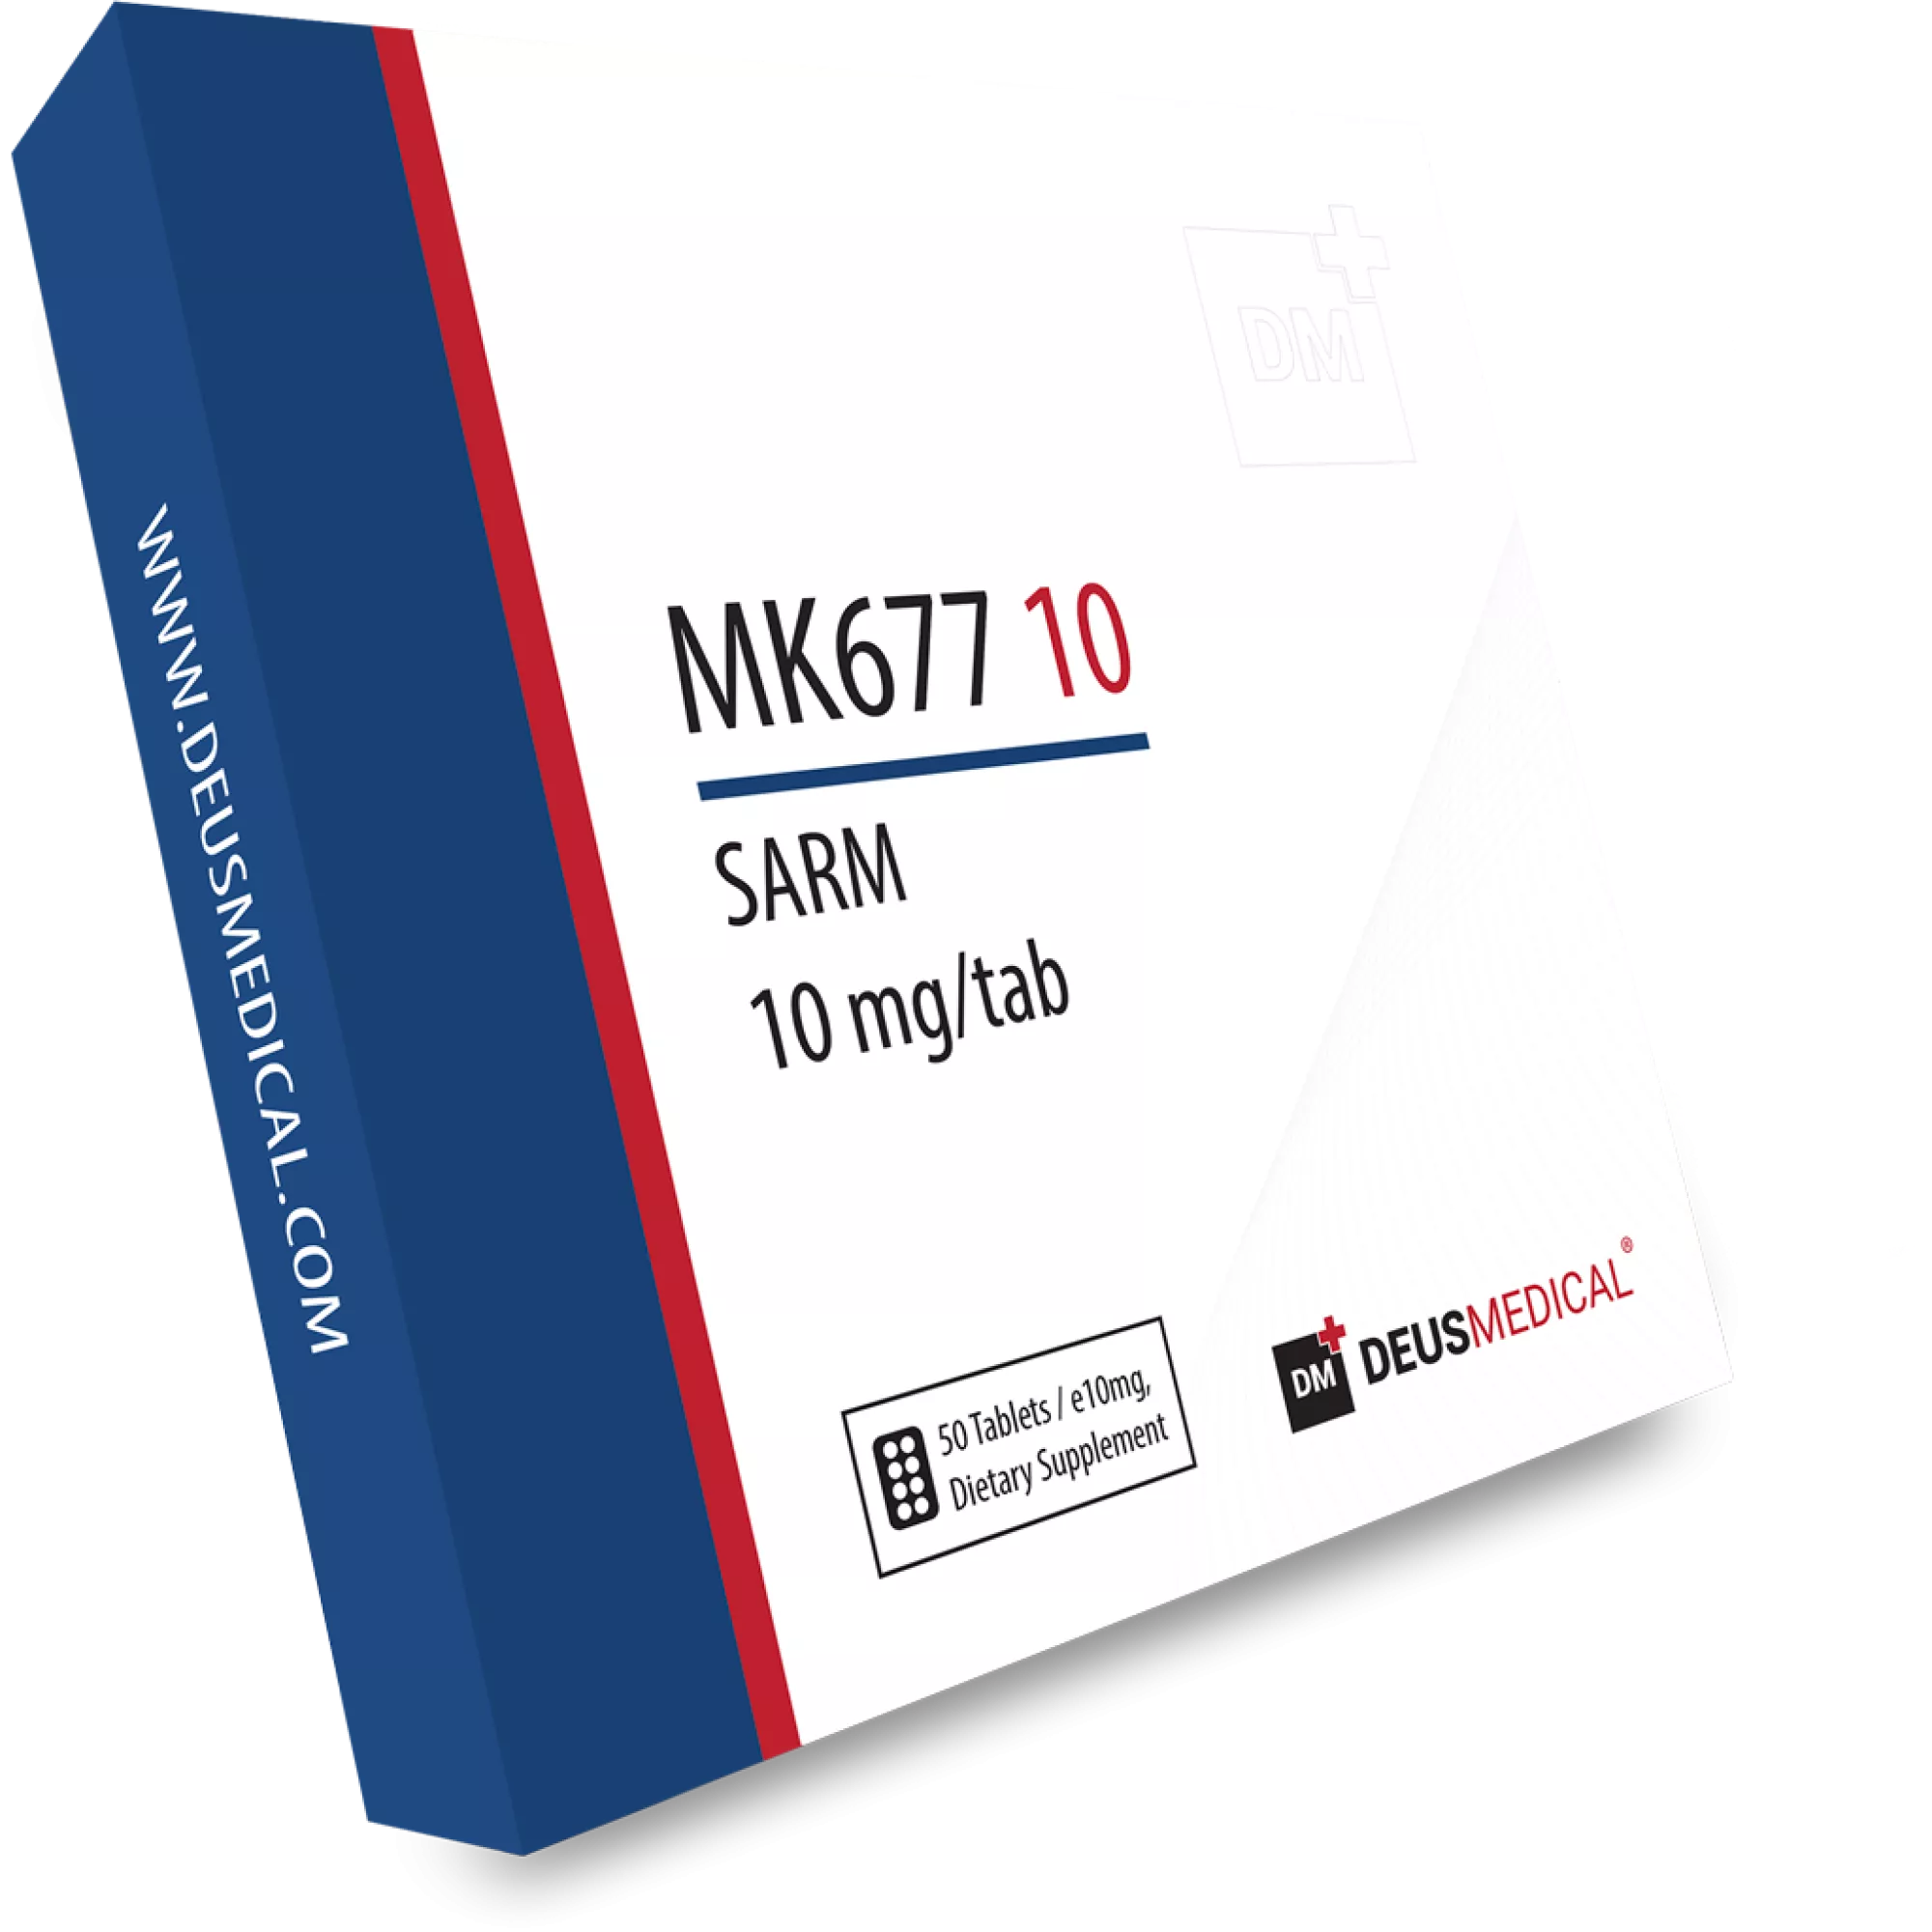 MK677 10 (Ibutamoren), Deus Medical, Buy Steroids Online - www.deuspower.shop